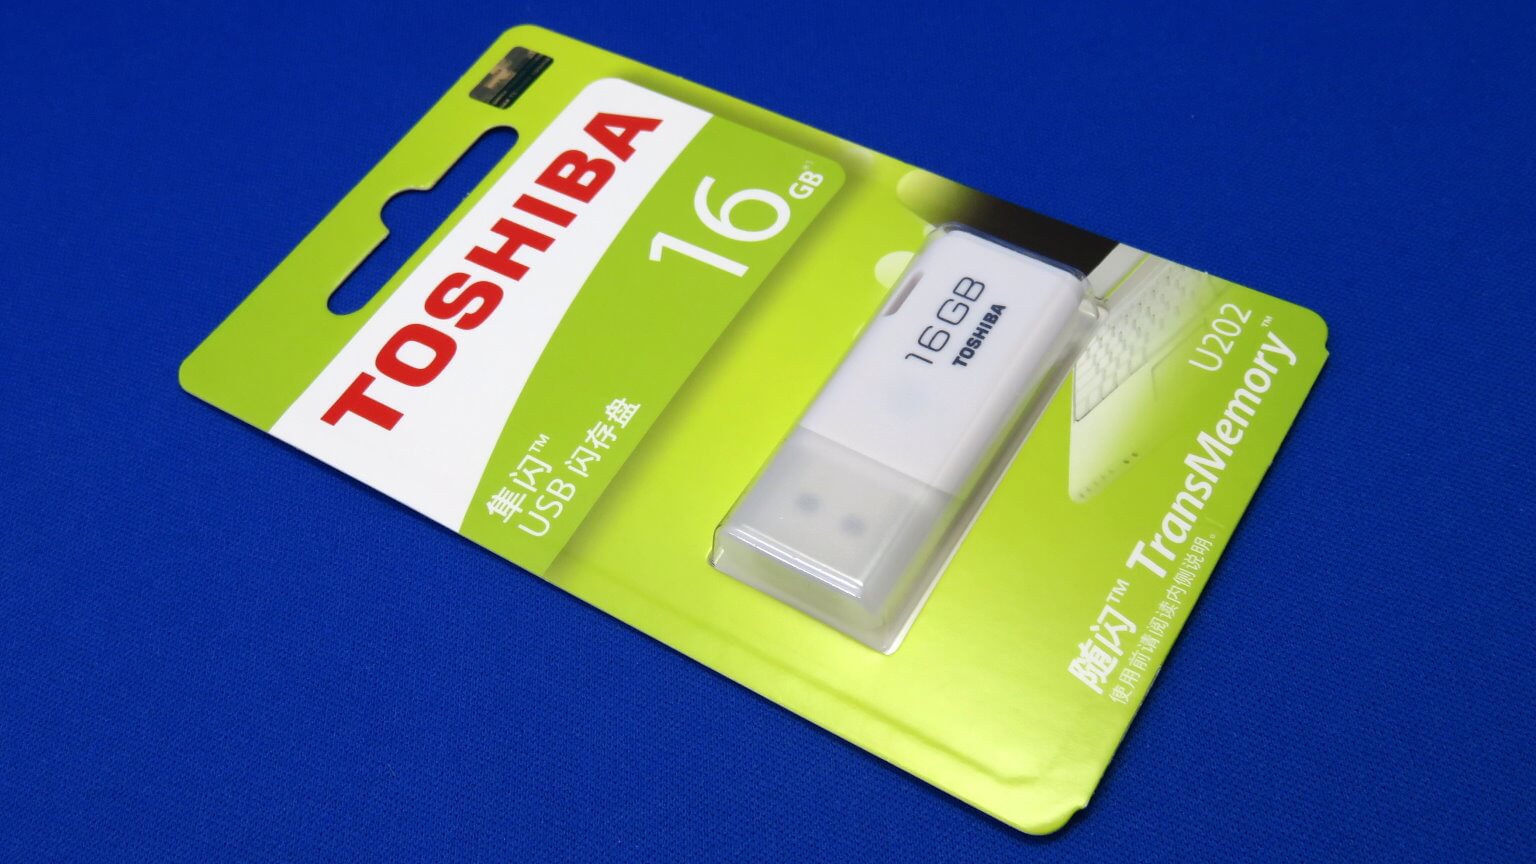 サンプル百貨店でTOSHIBA USBメモリ 16GBを購入する！